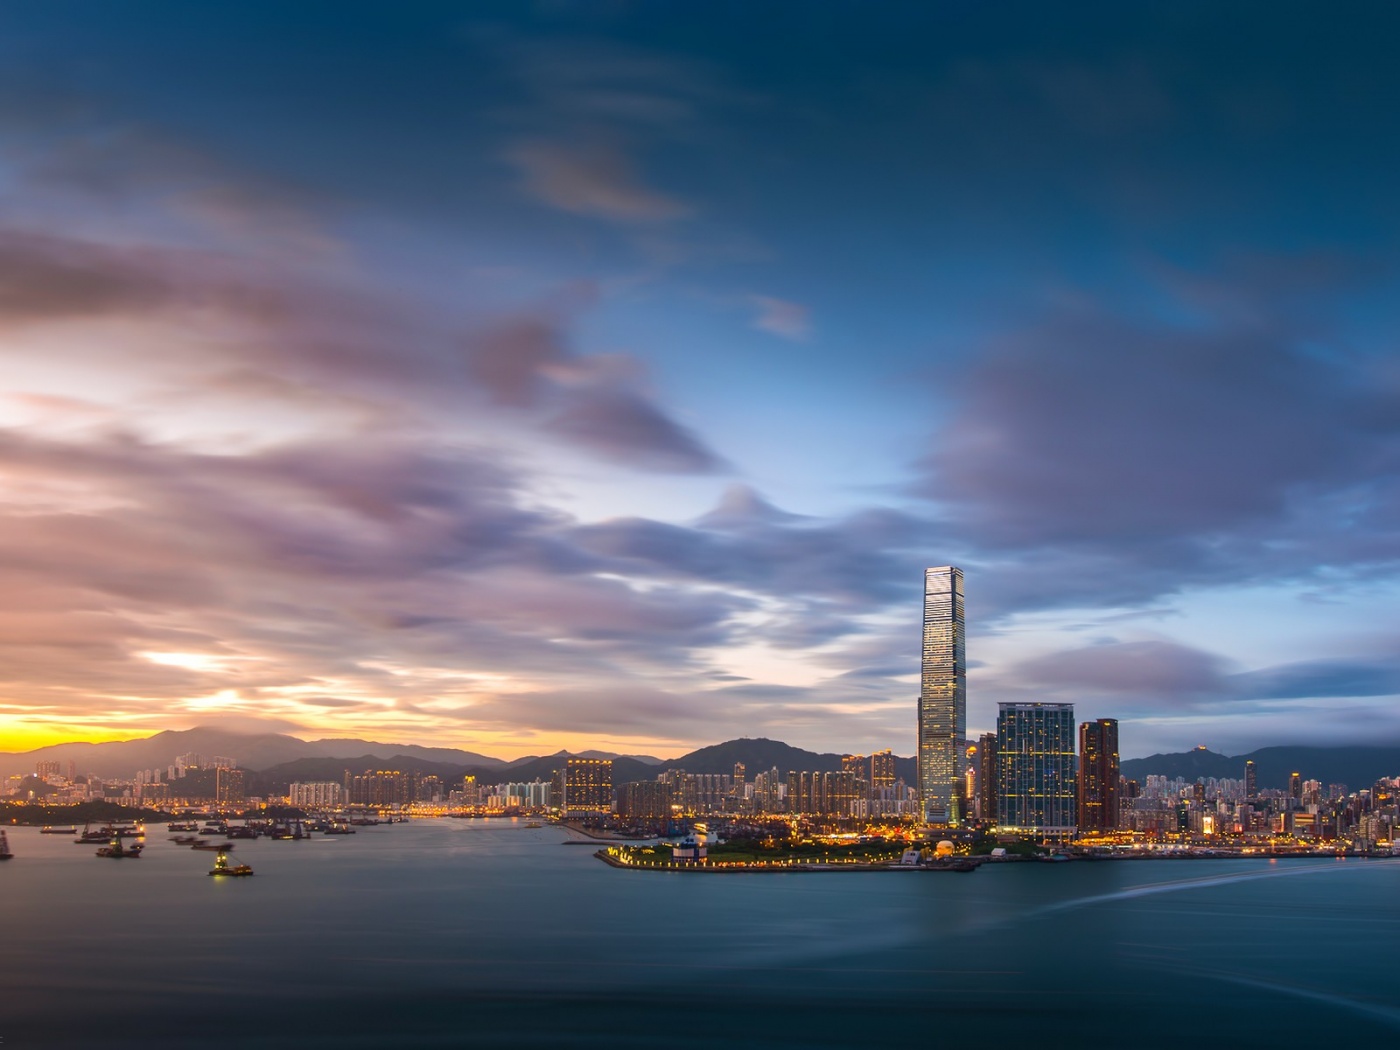 Hong Kong Evening Sunset Sky Clouds Bay Building Fires Port Metropolis City